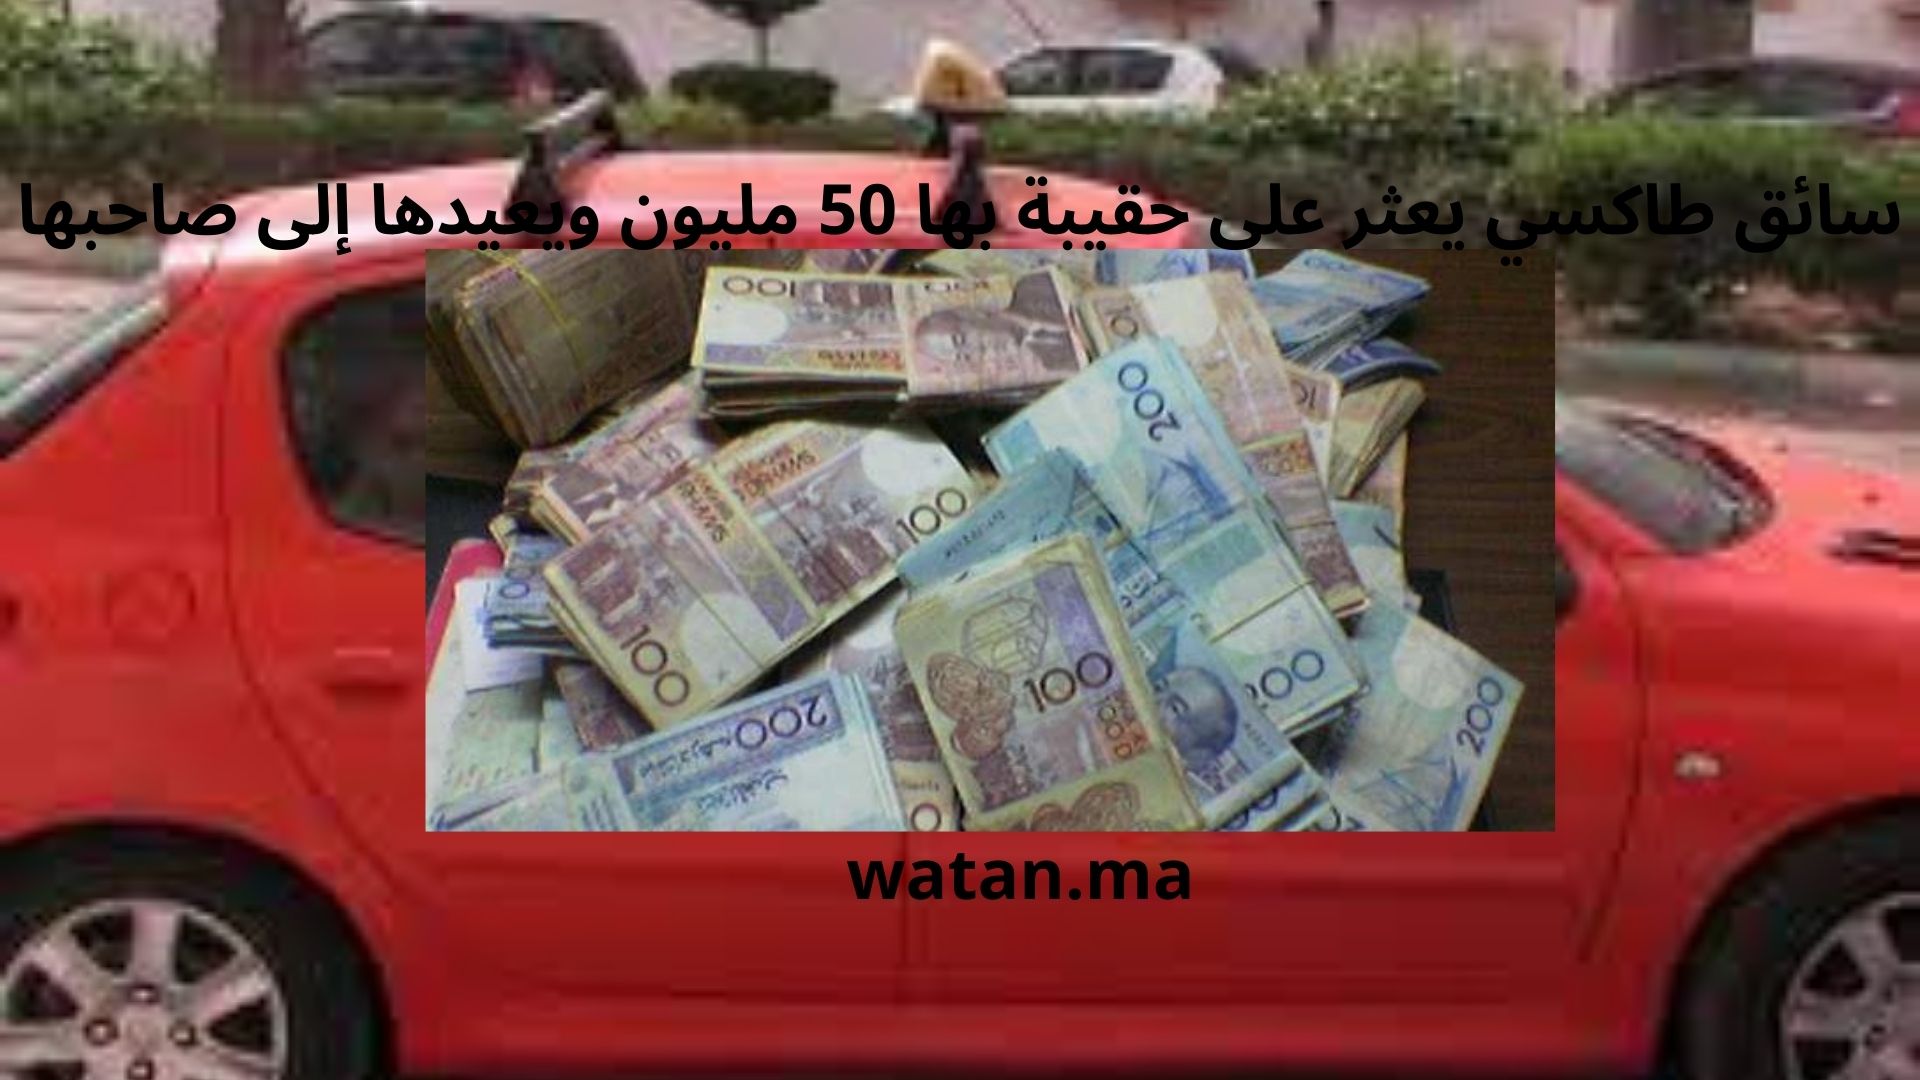 أكادير…سائق طاكسي يعثر على حقيبة بها 50 مليون ويعيدها إلى صاحبها